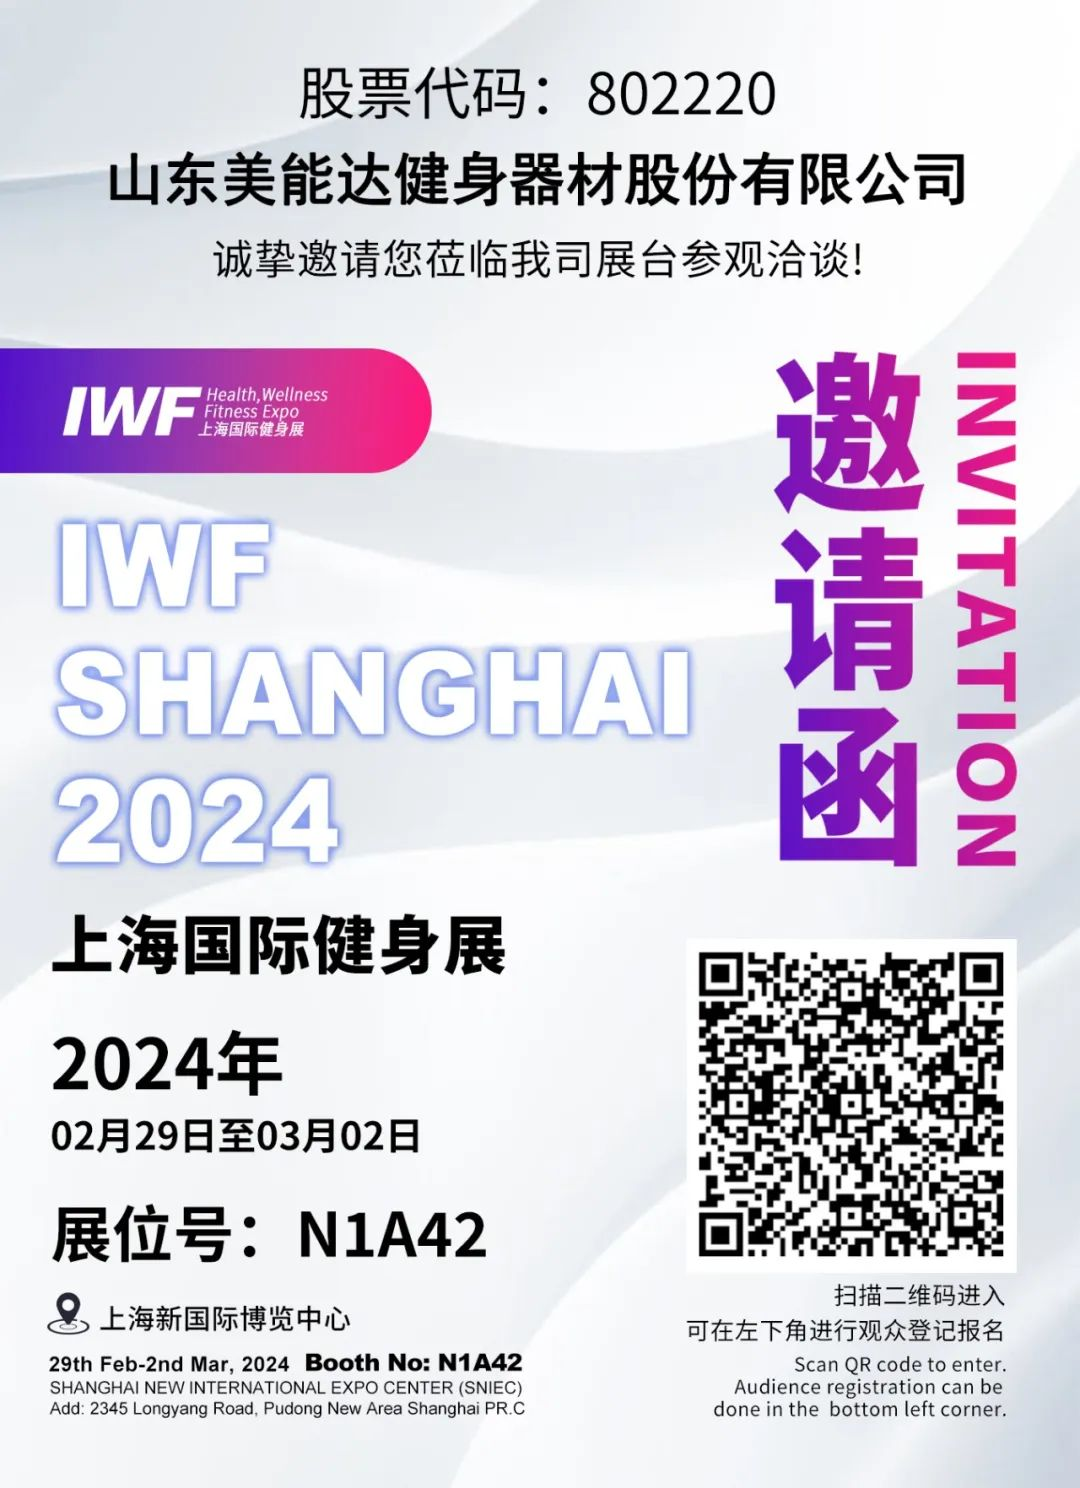 Minolta ju fton përzemërsisht të vizitoni stendën N1A42 për negociata në Ekspozitën Ndërkombëtare të Fitnesit në Shanghai 2024